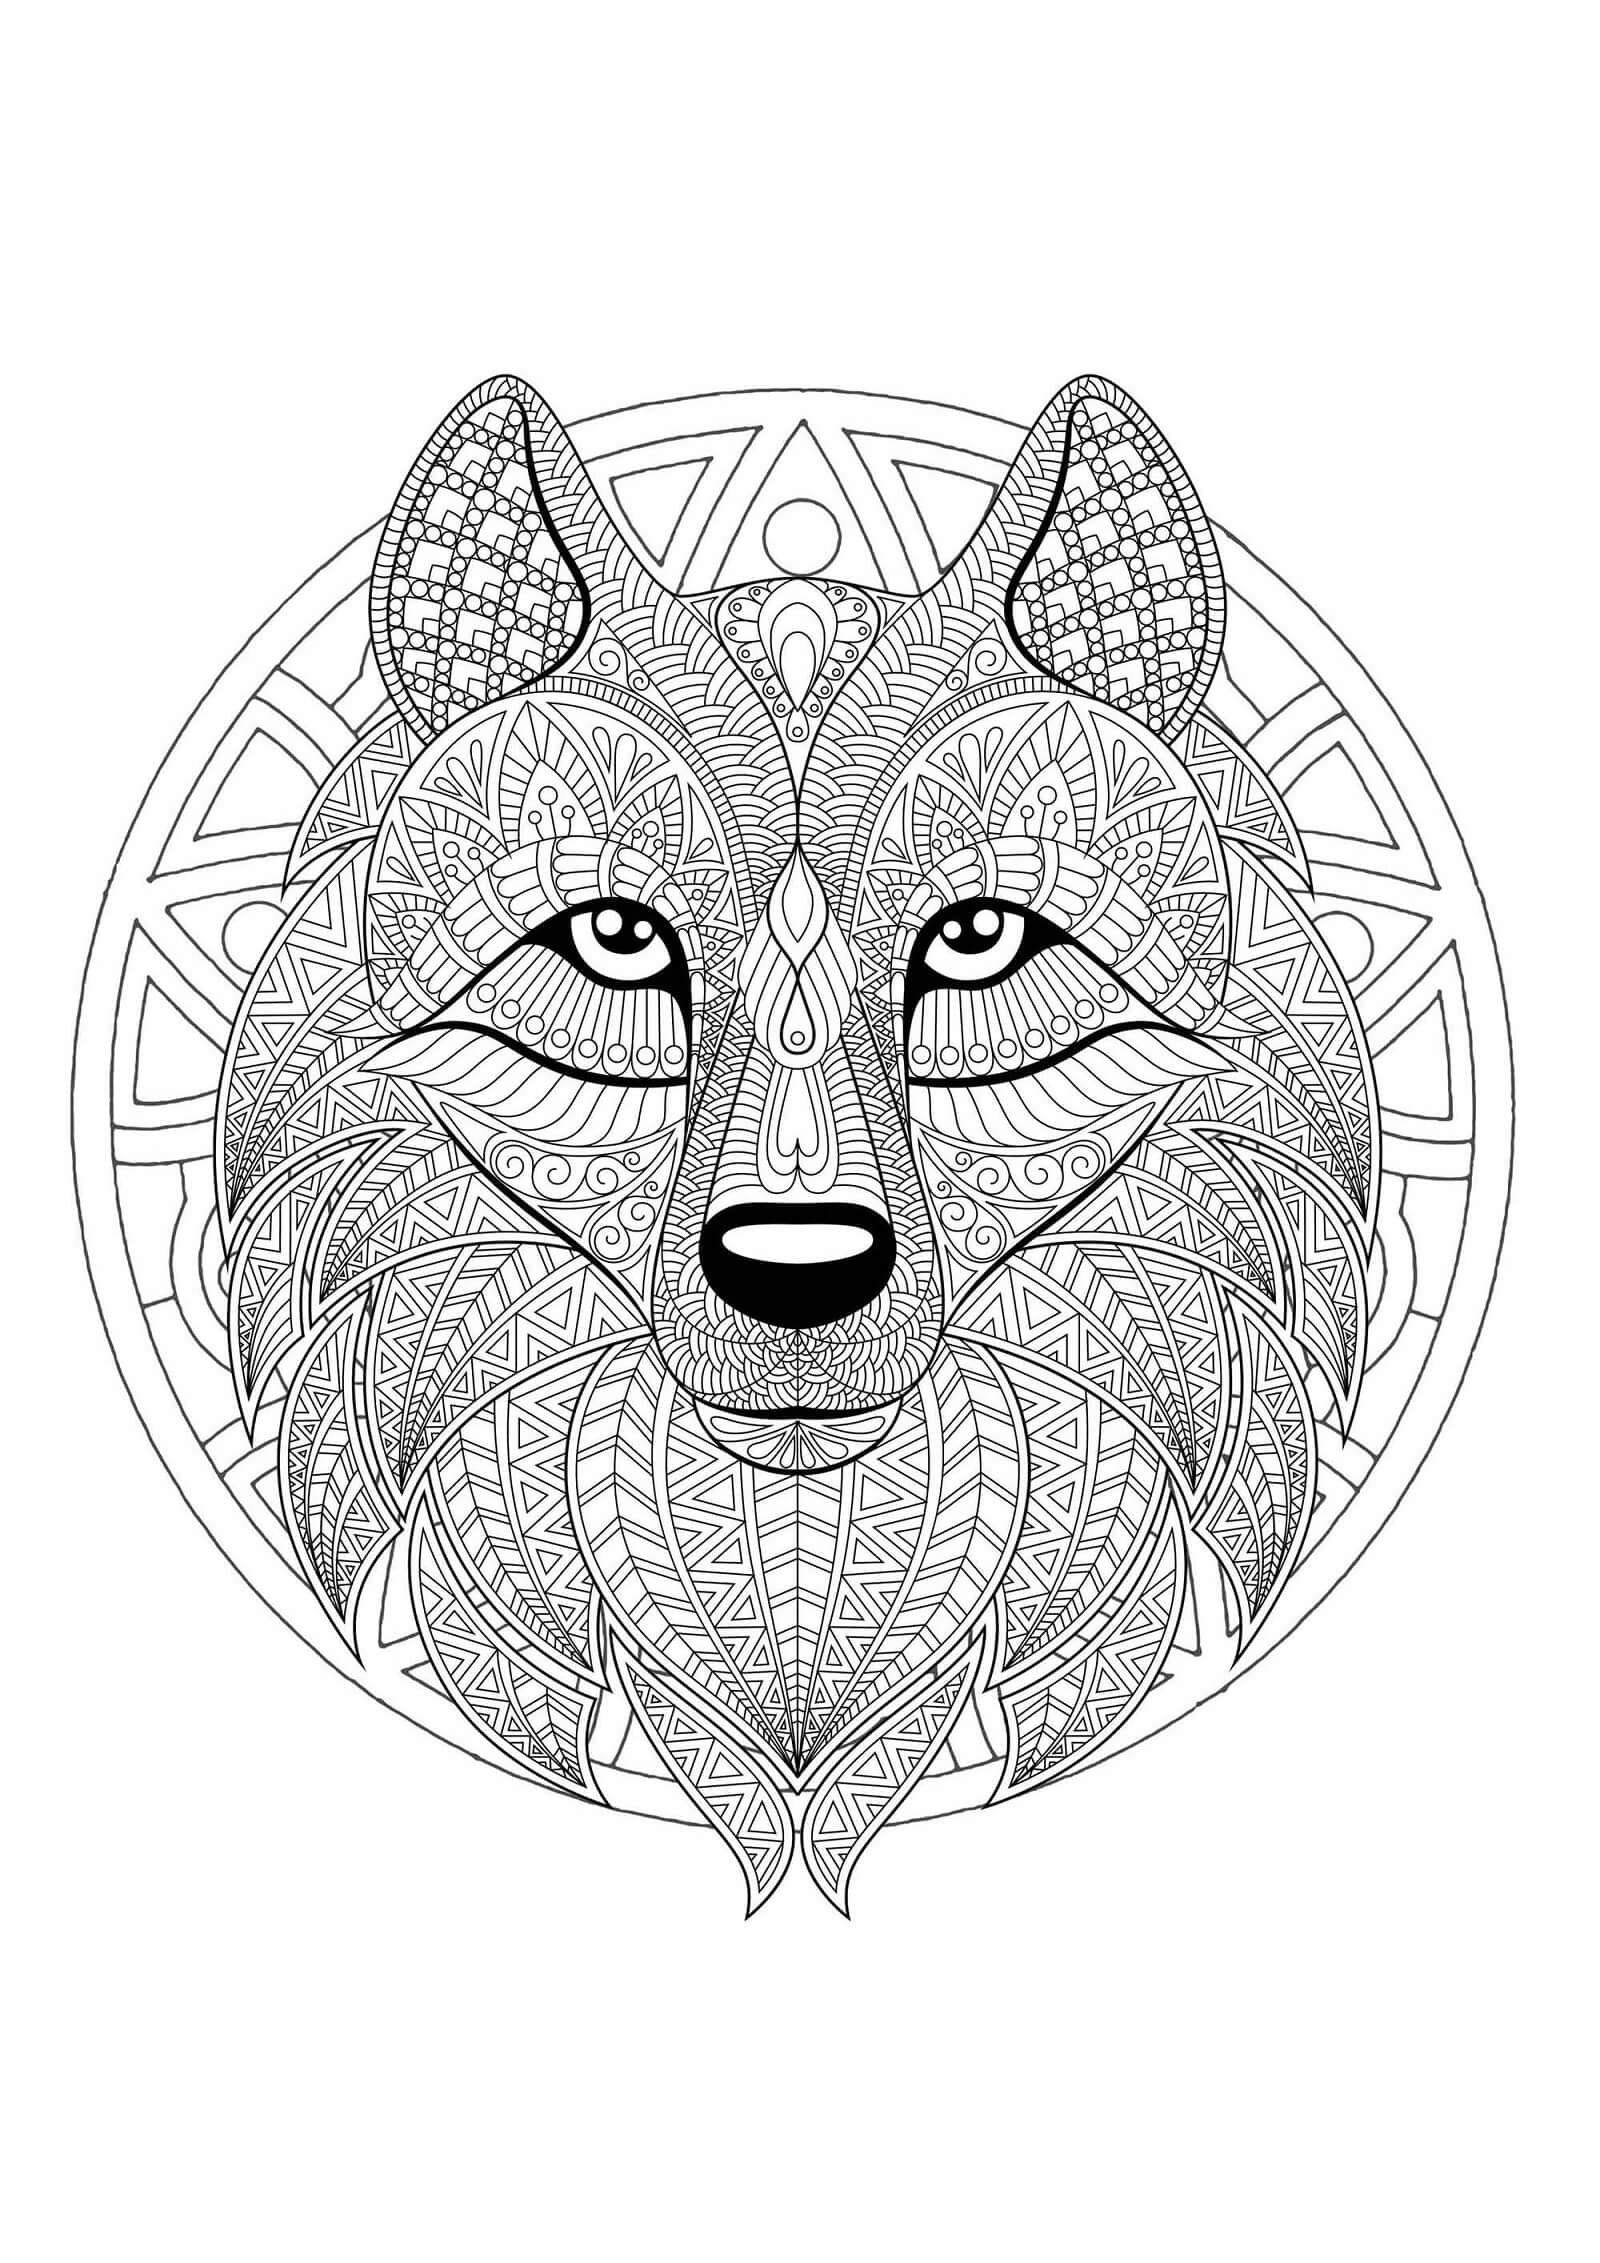 Magnifique Mandala de Loup coloring page